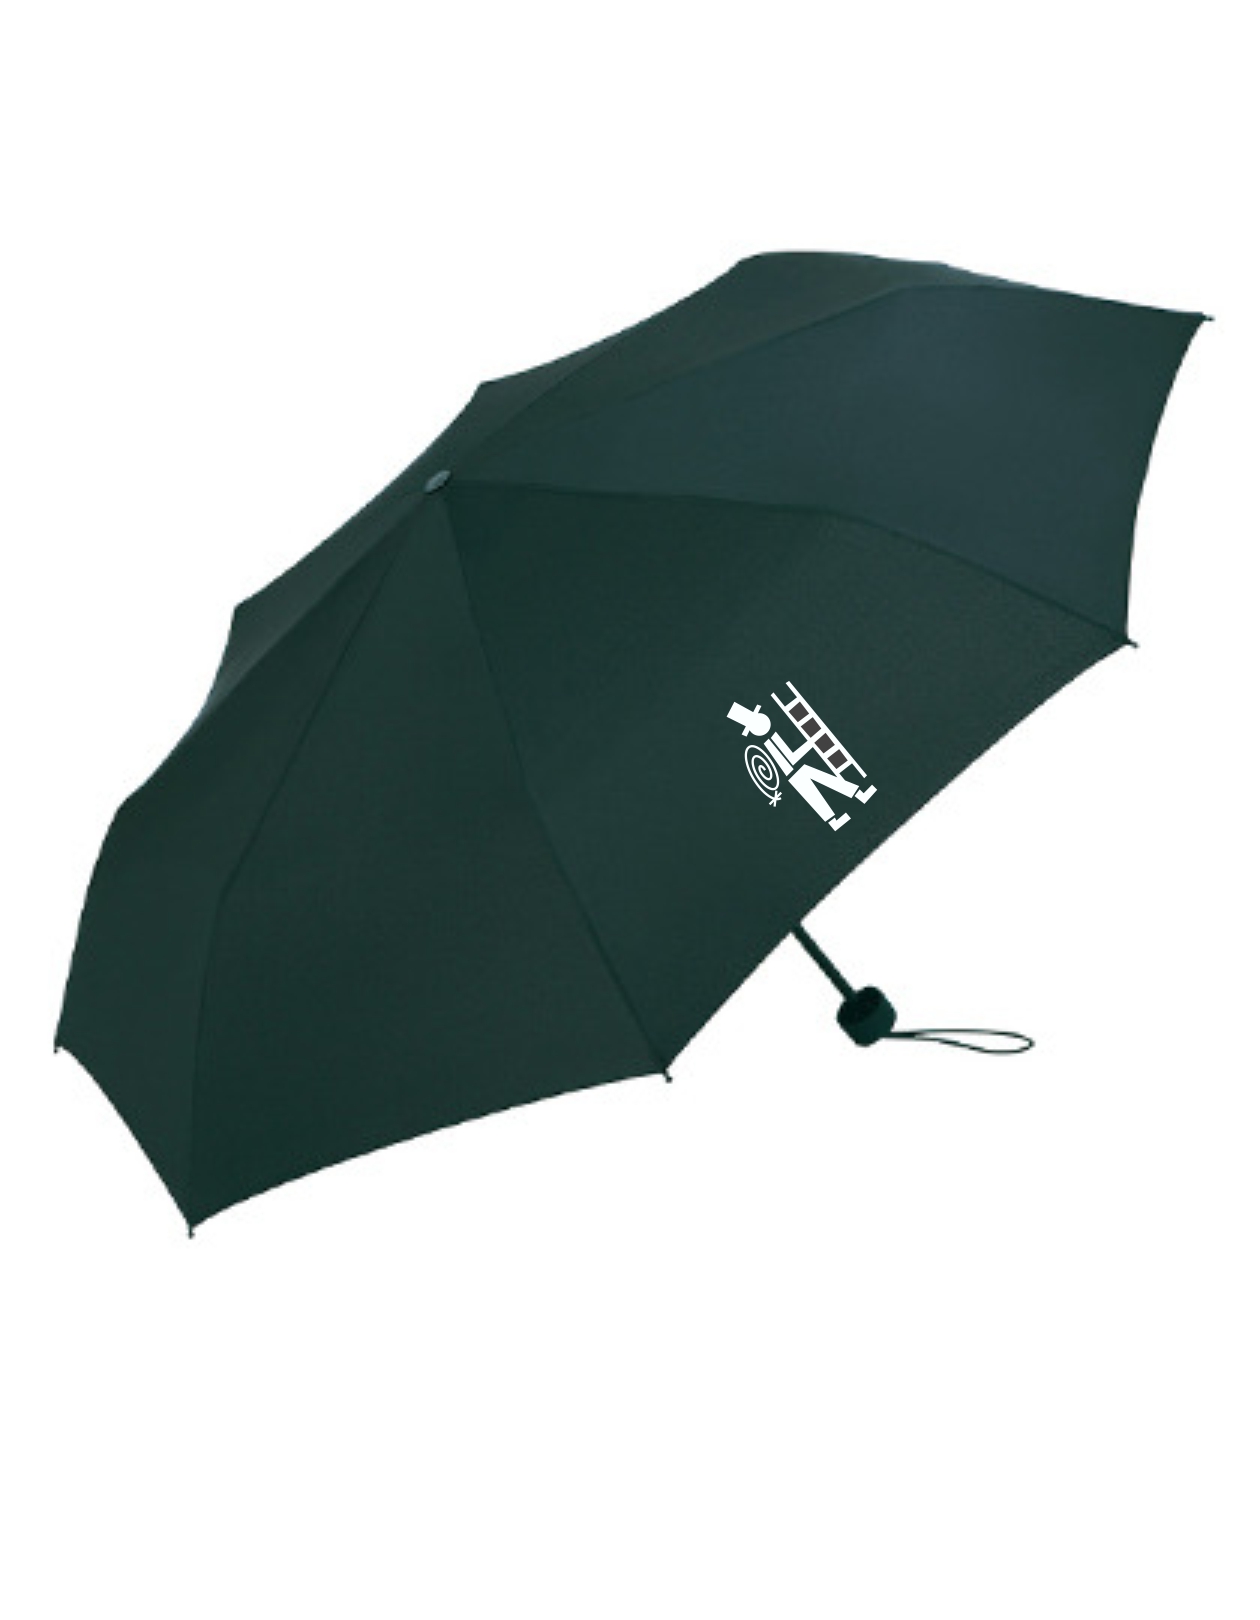 Regenschirm mit Schorni 2